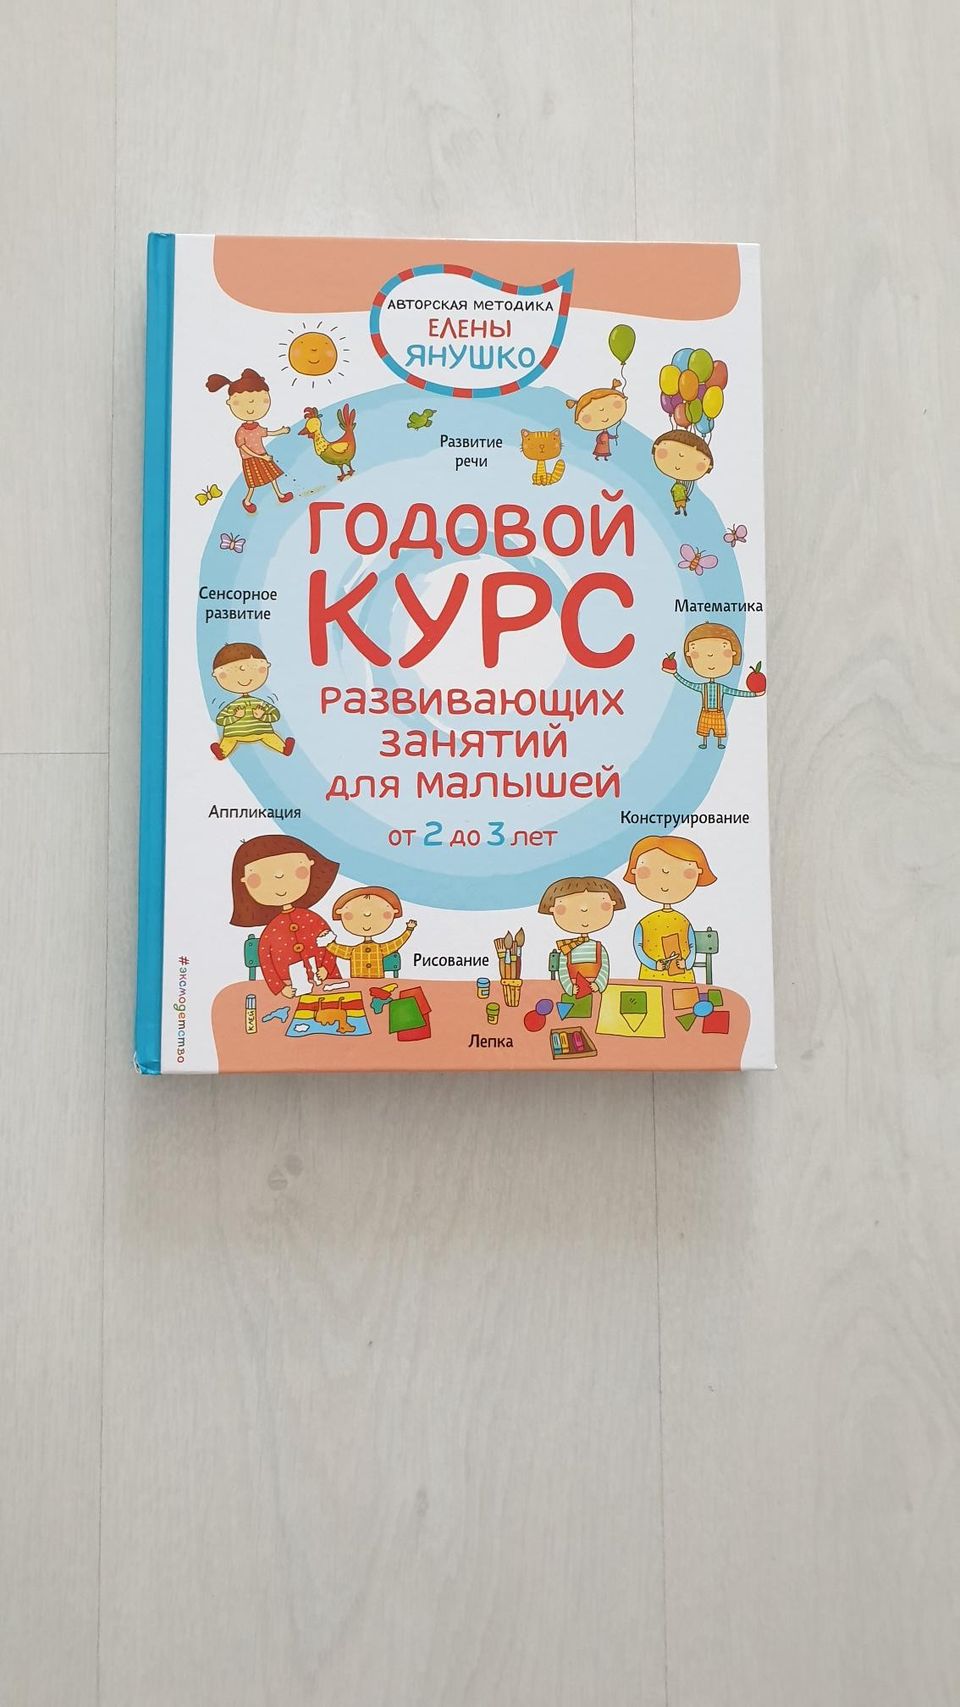 Kirja venäjän kielellä